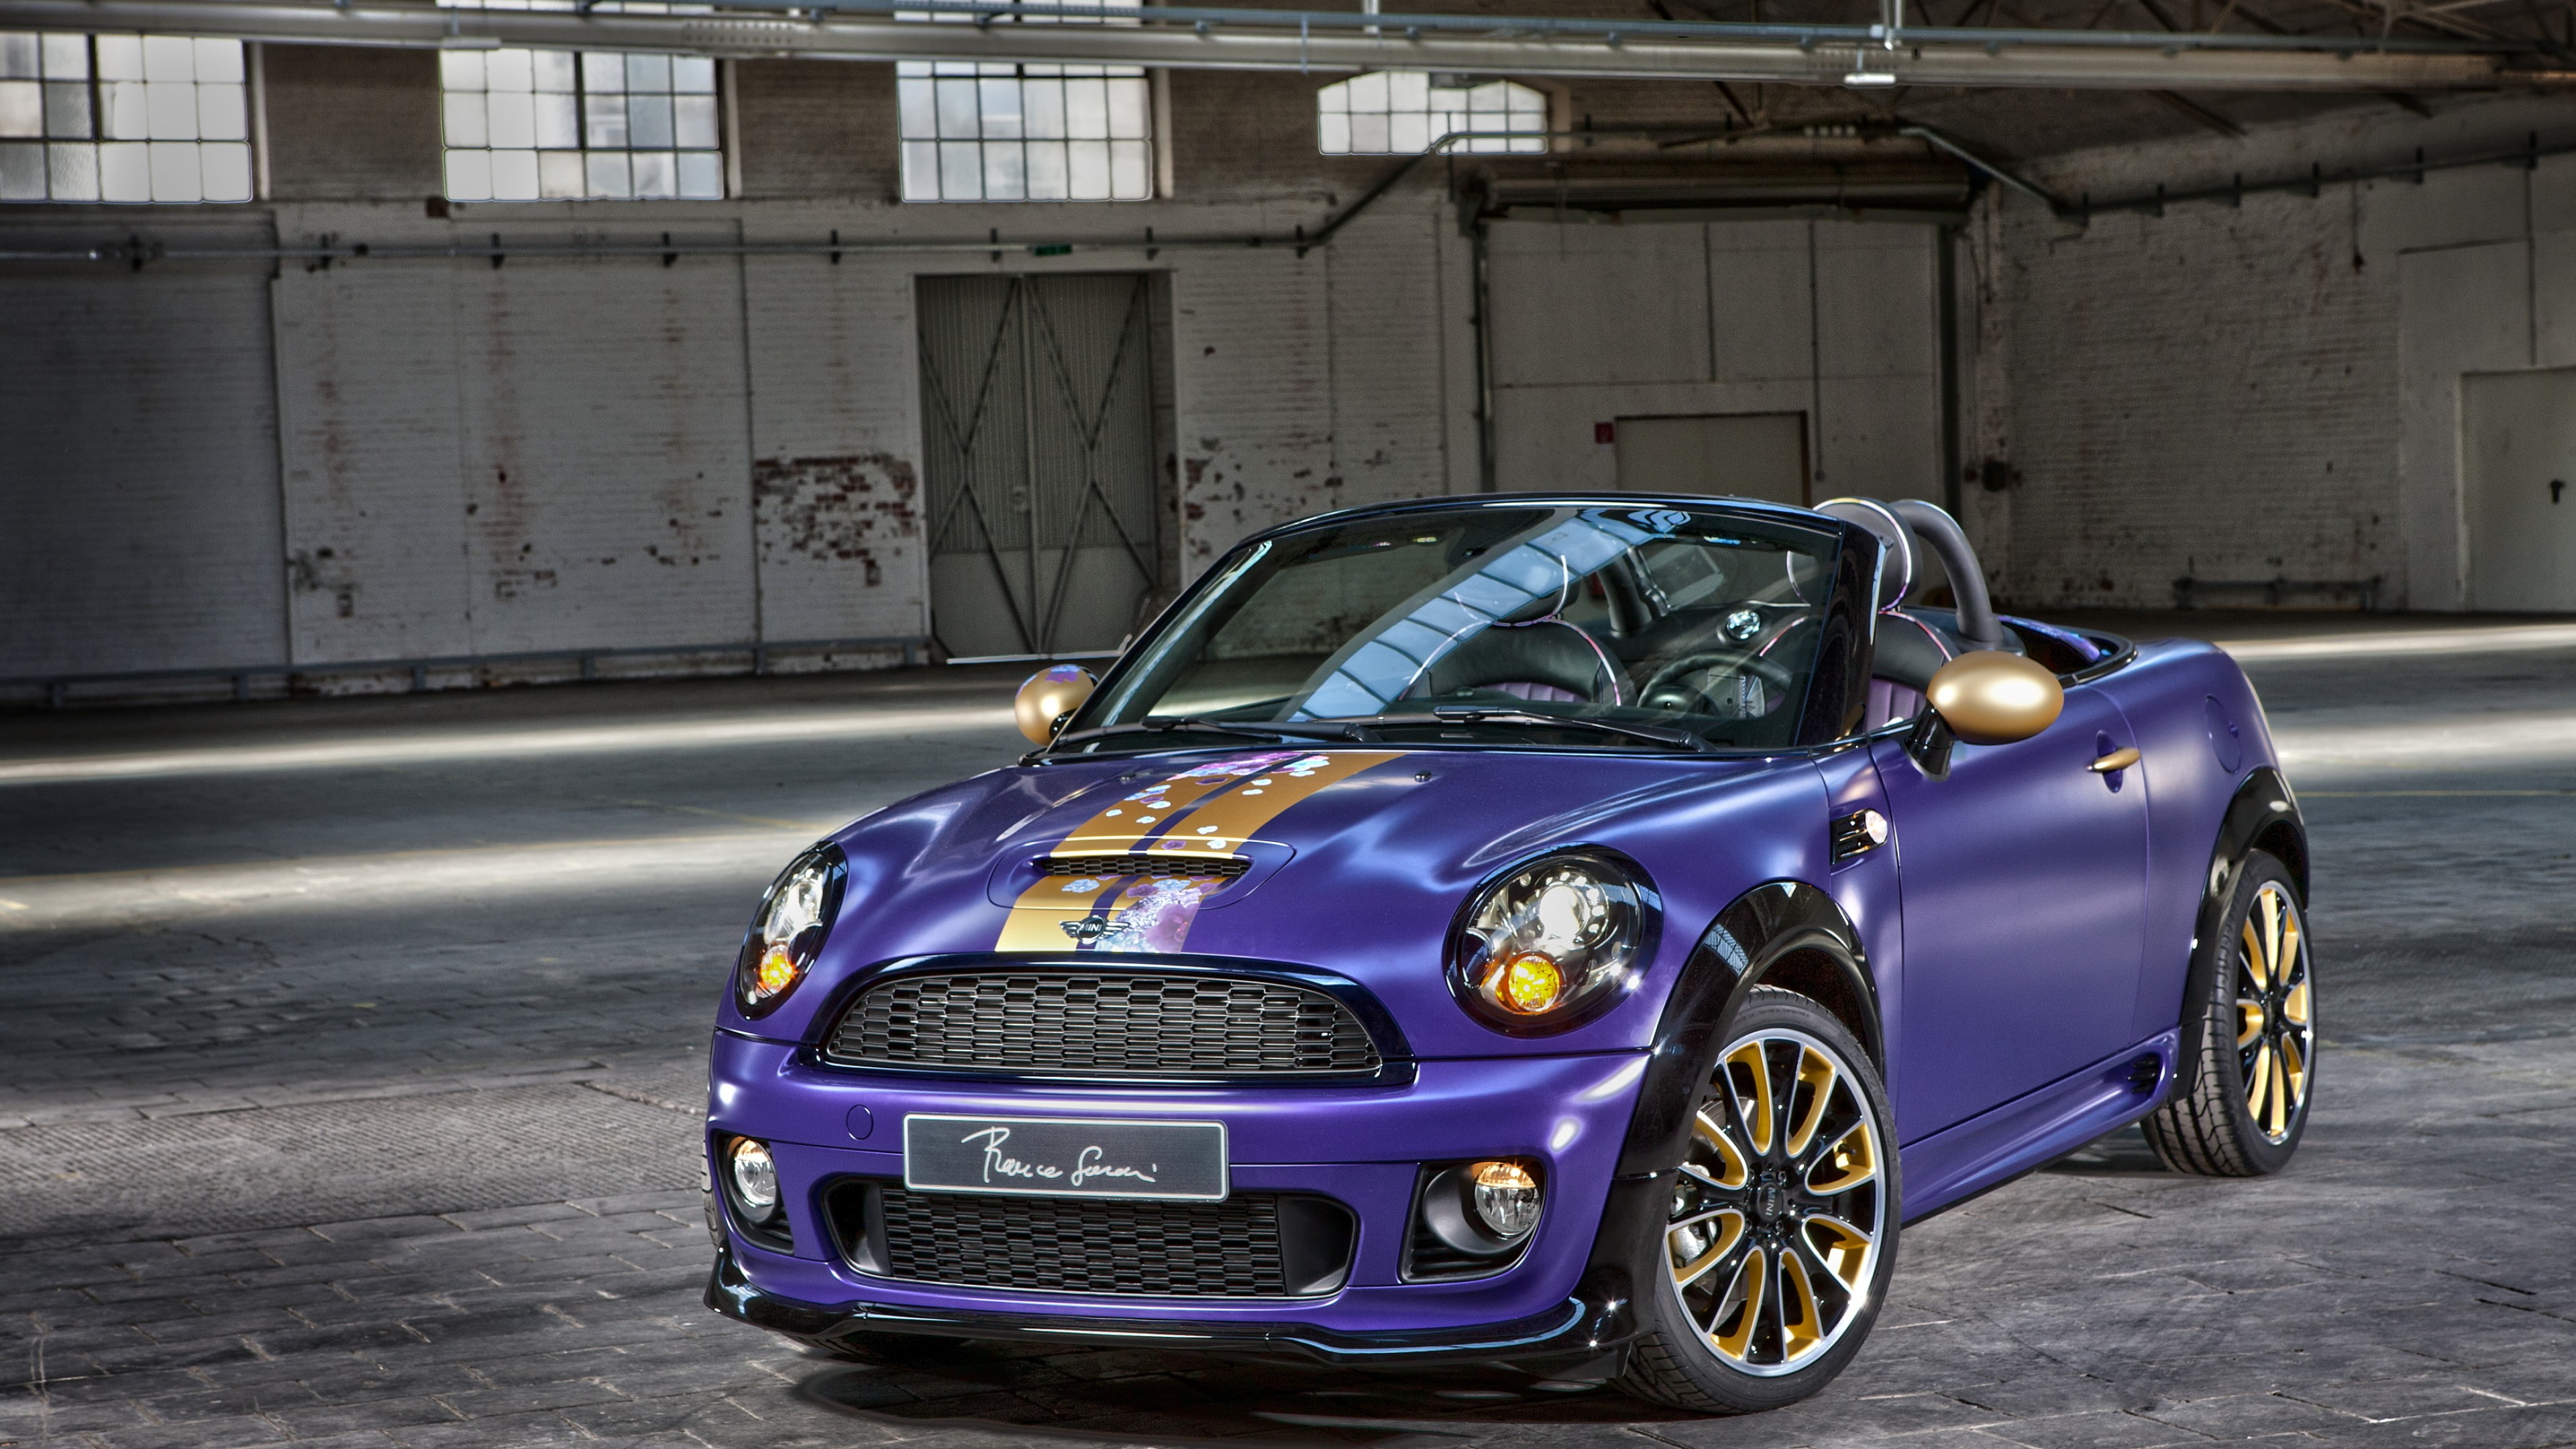 purple convertible coupe, Mini Cooper S Roadster, franca sozzani